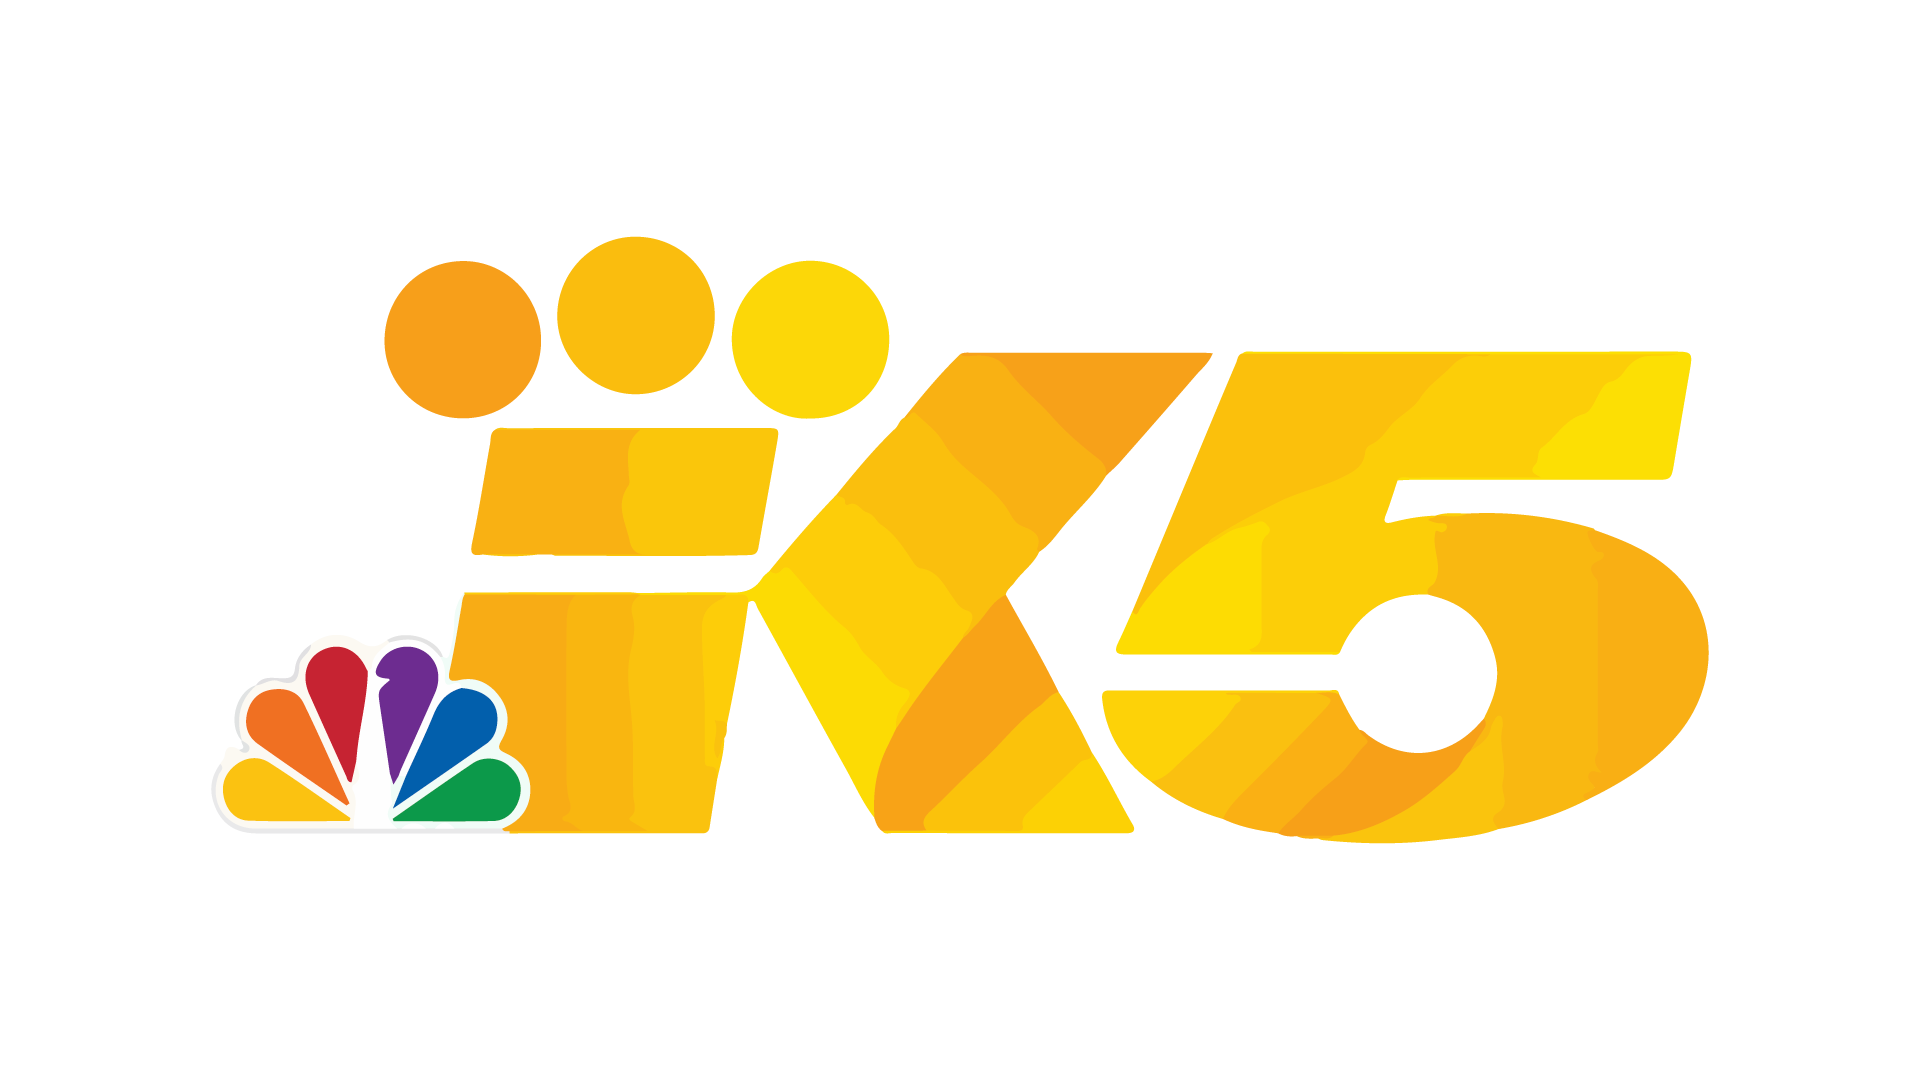 KING 5 News Live TV, Online Teleame Directos TV EEUU